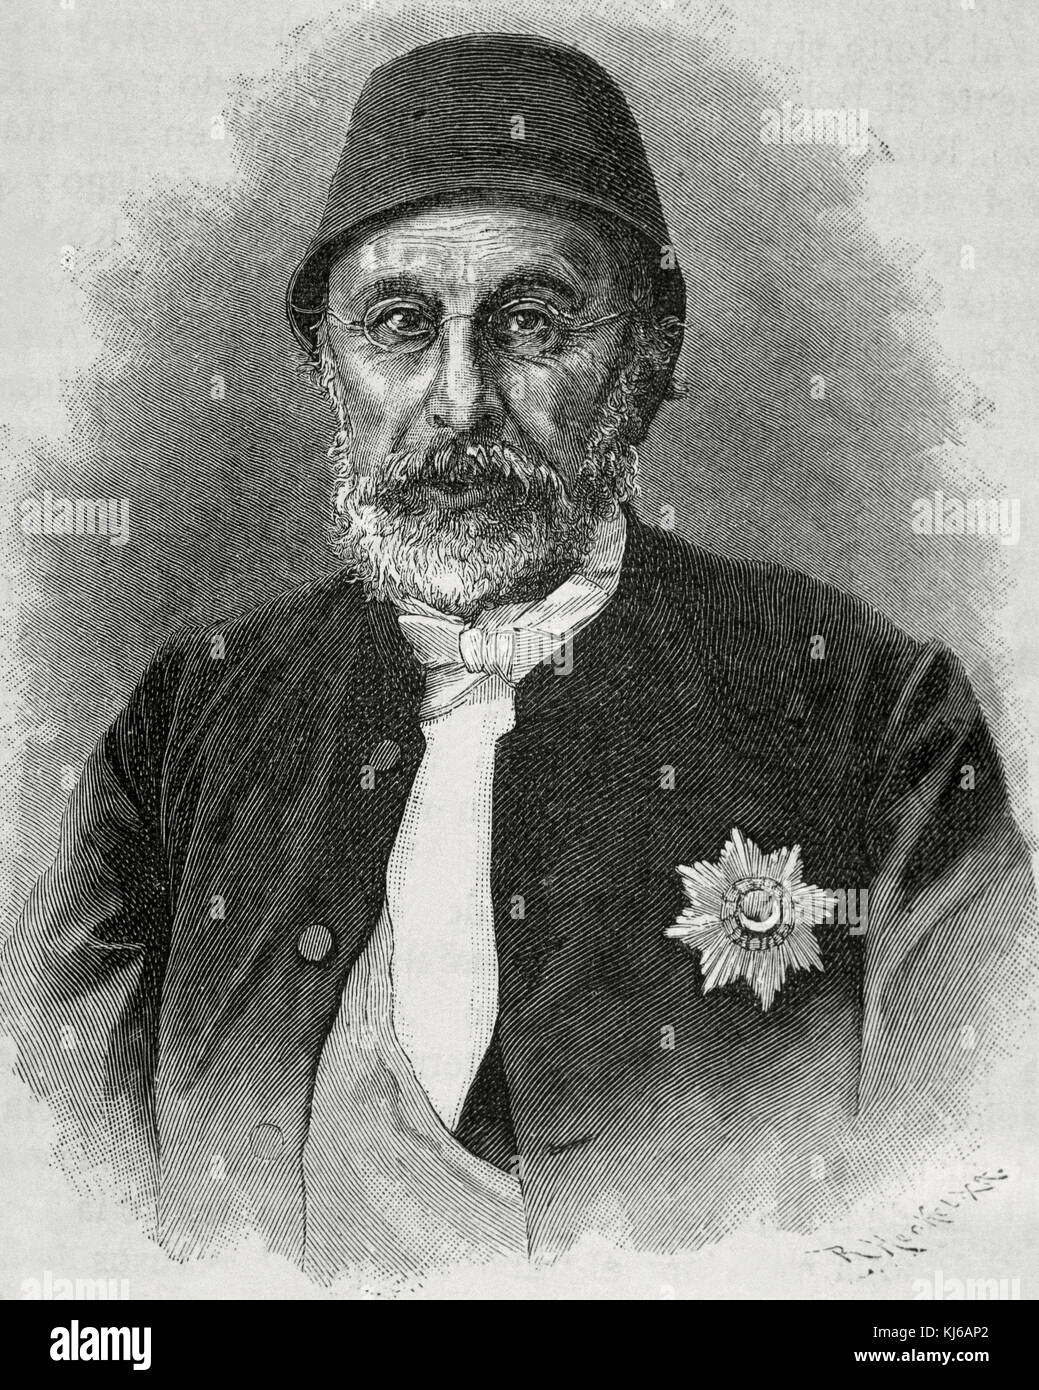 Mehmed Fuad Pascià (1814-1869). Statista ottomano. Gran Visir dell'Impero Ottomano nel 1861. Ritratto. Incisione di R. Heckel. Foto Stock